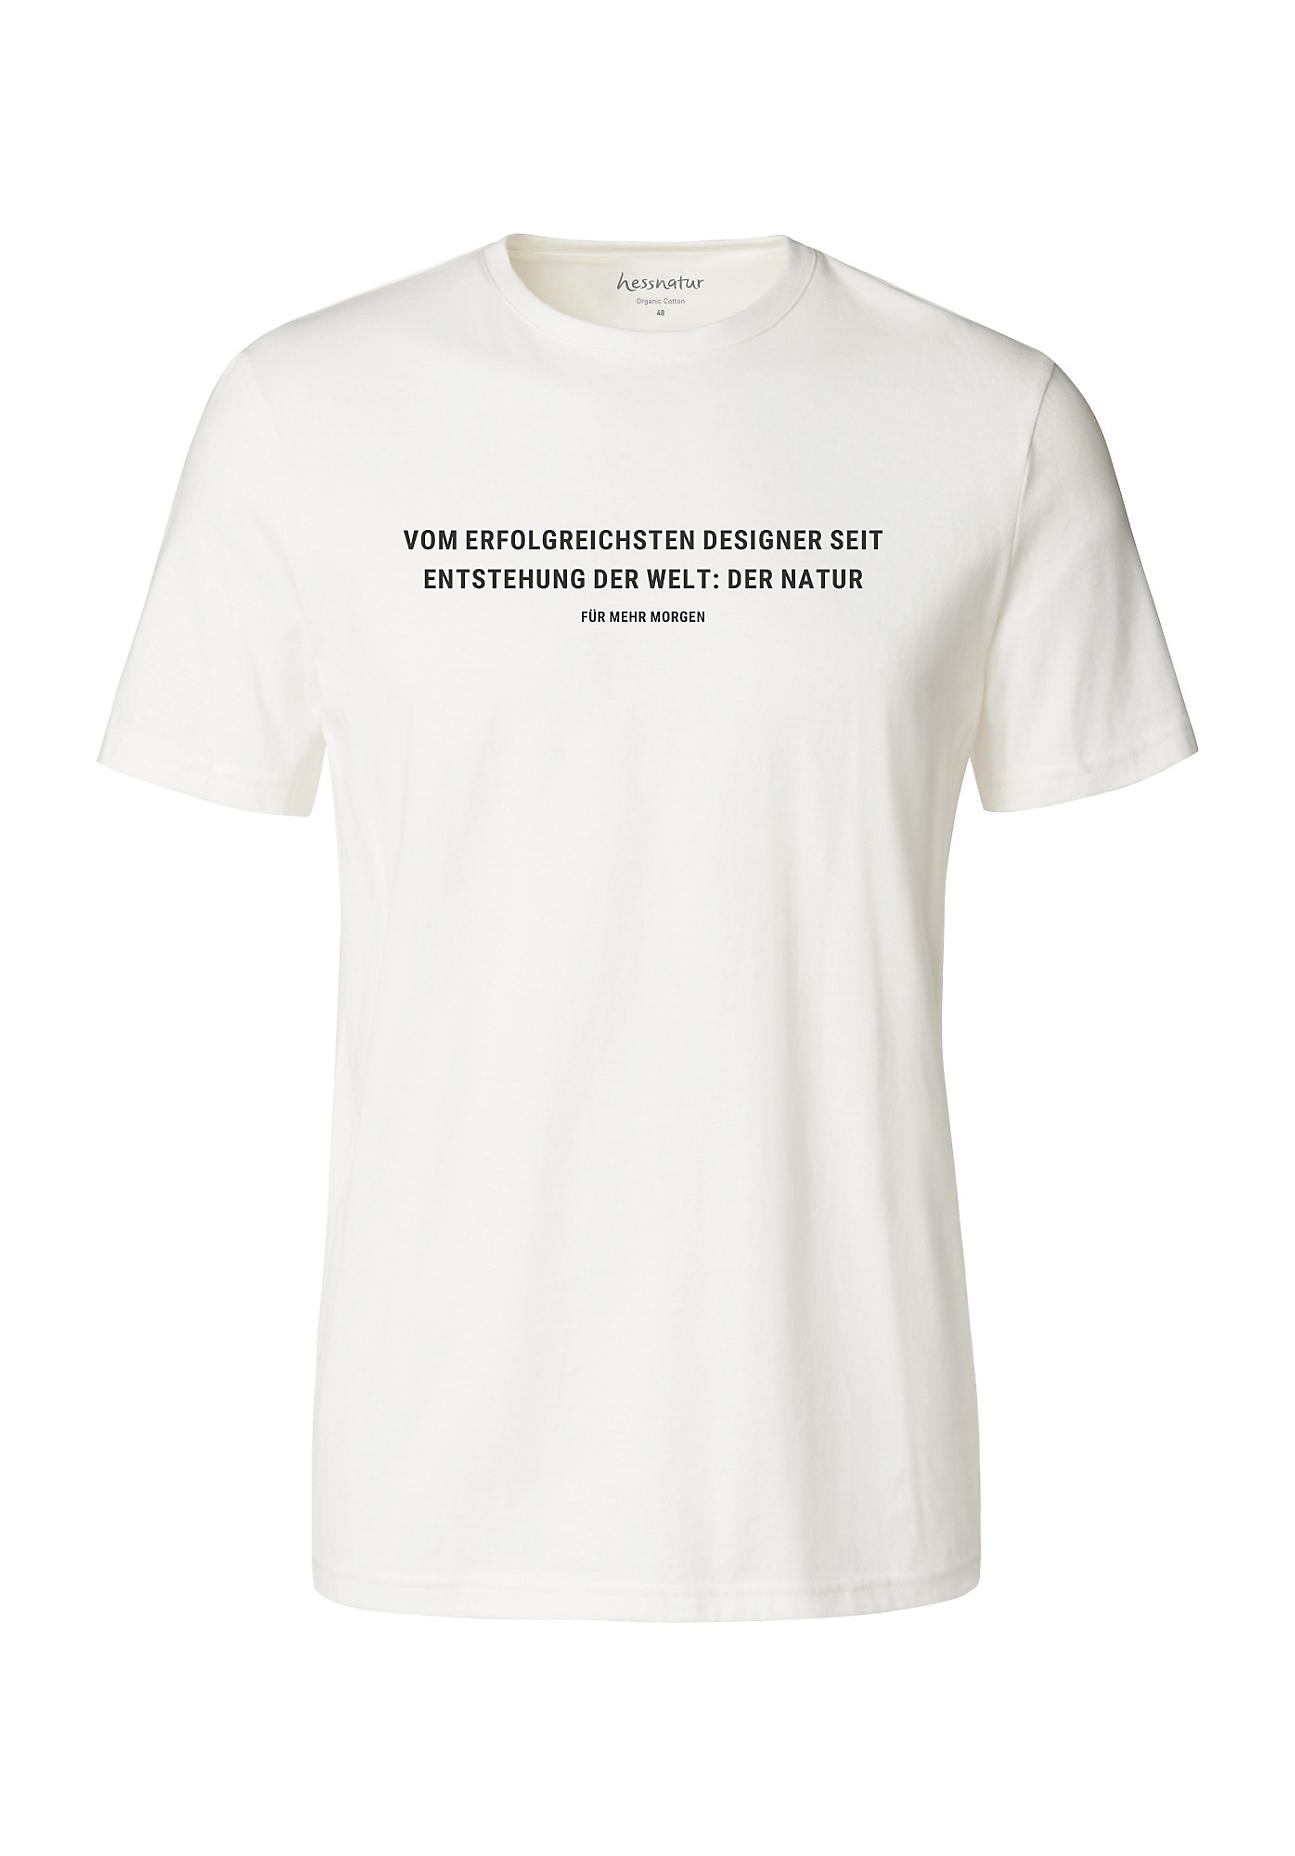 hessnatur Herren Statement Shirt aus Bio-Baumwolle - weiß Grösse48 von hessnatur